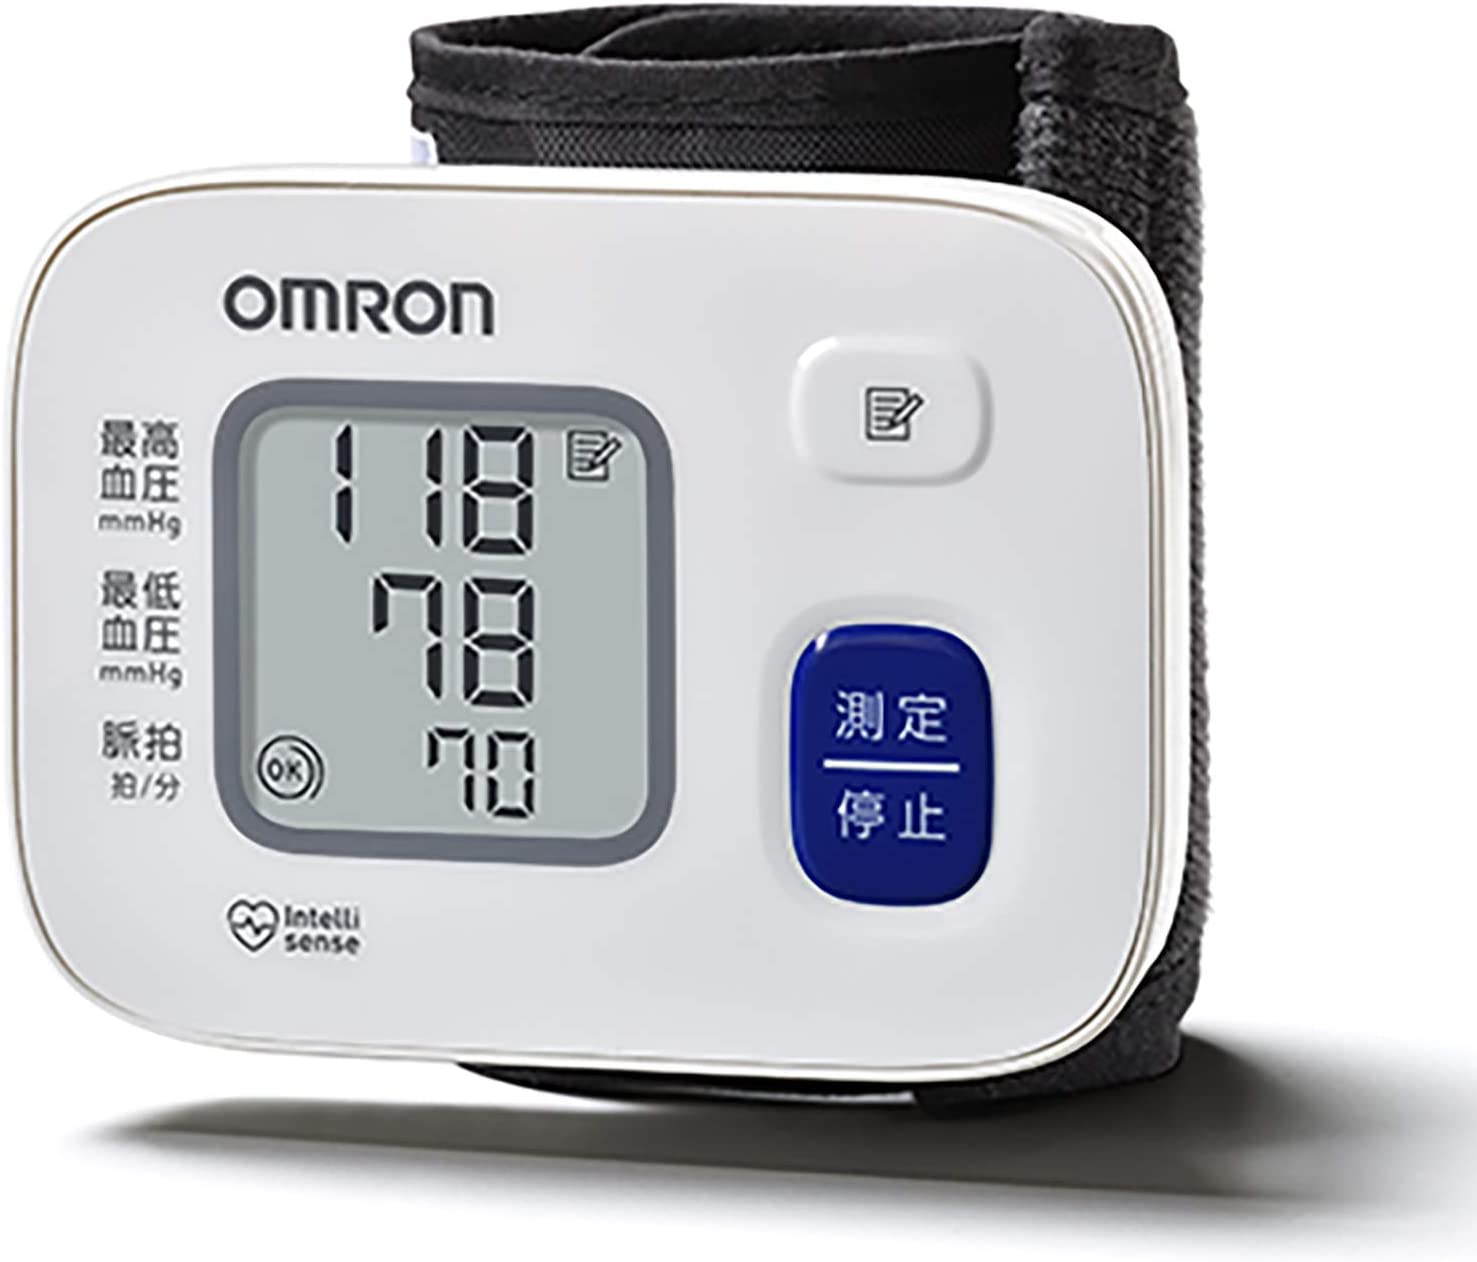 オムロン 手首式血圧計 HEM-6163 ワンボタン操作で手軽に測定